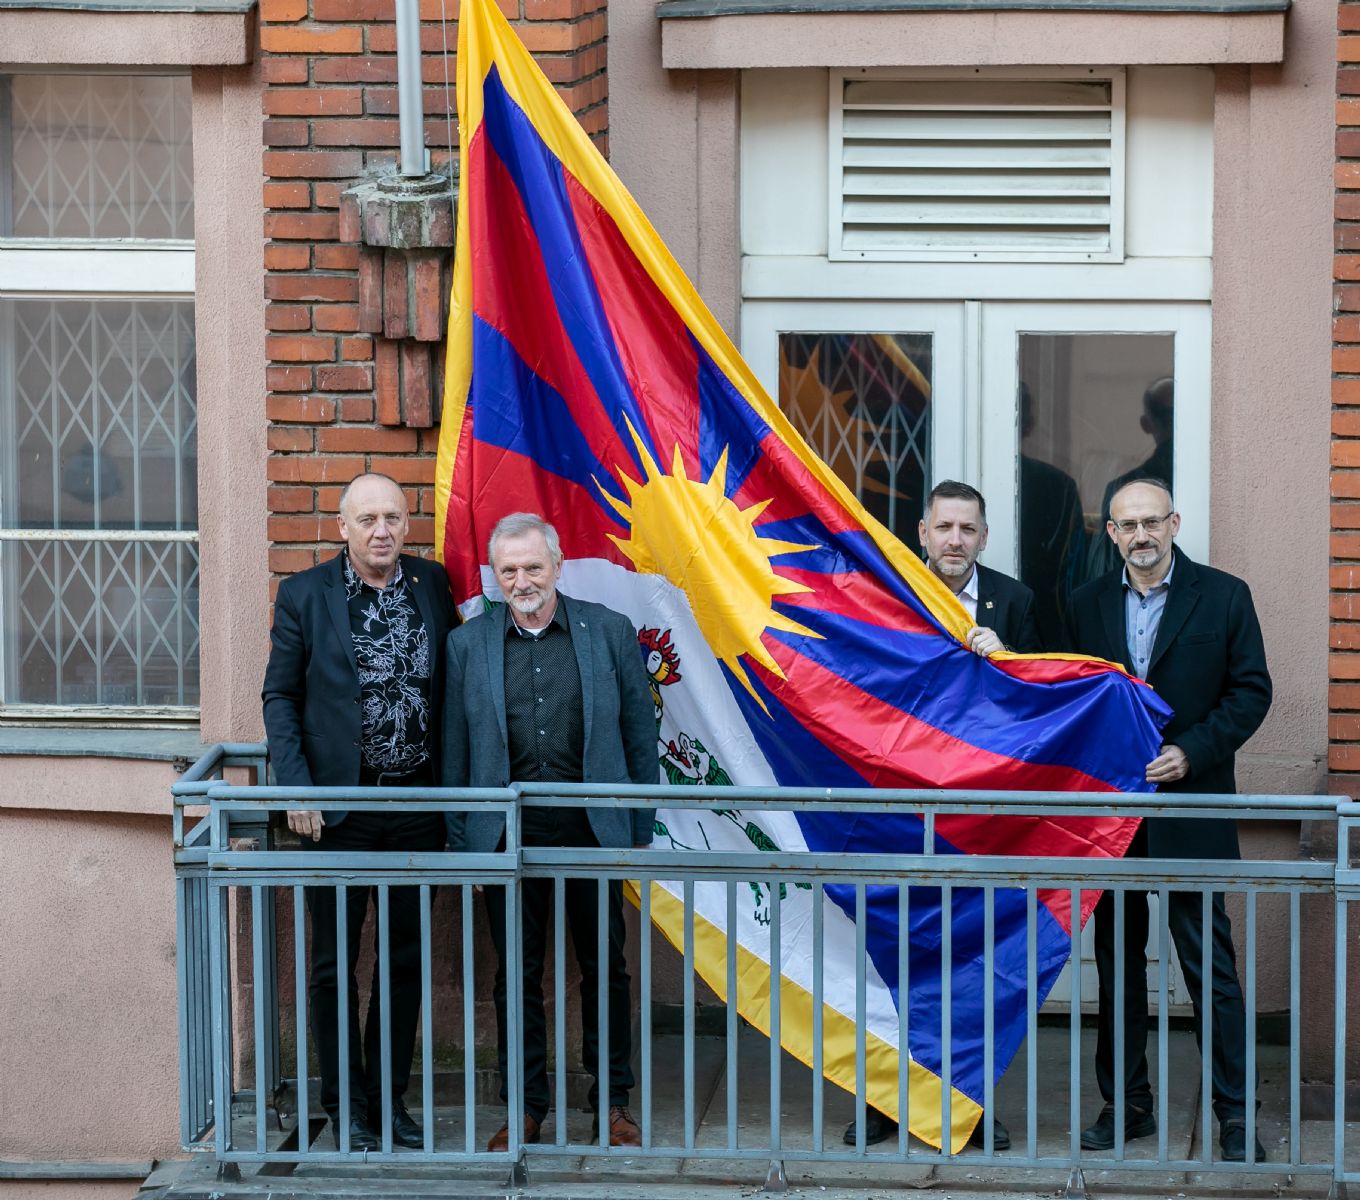 Plzeňský kraj vyvěsil tibetskou vlajku na budově krajského úřadu